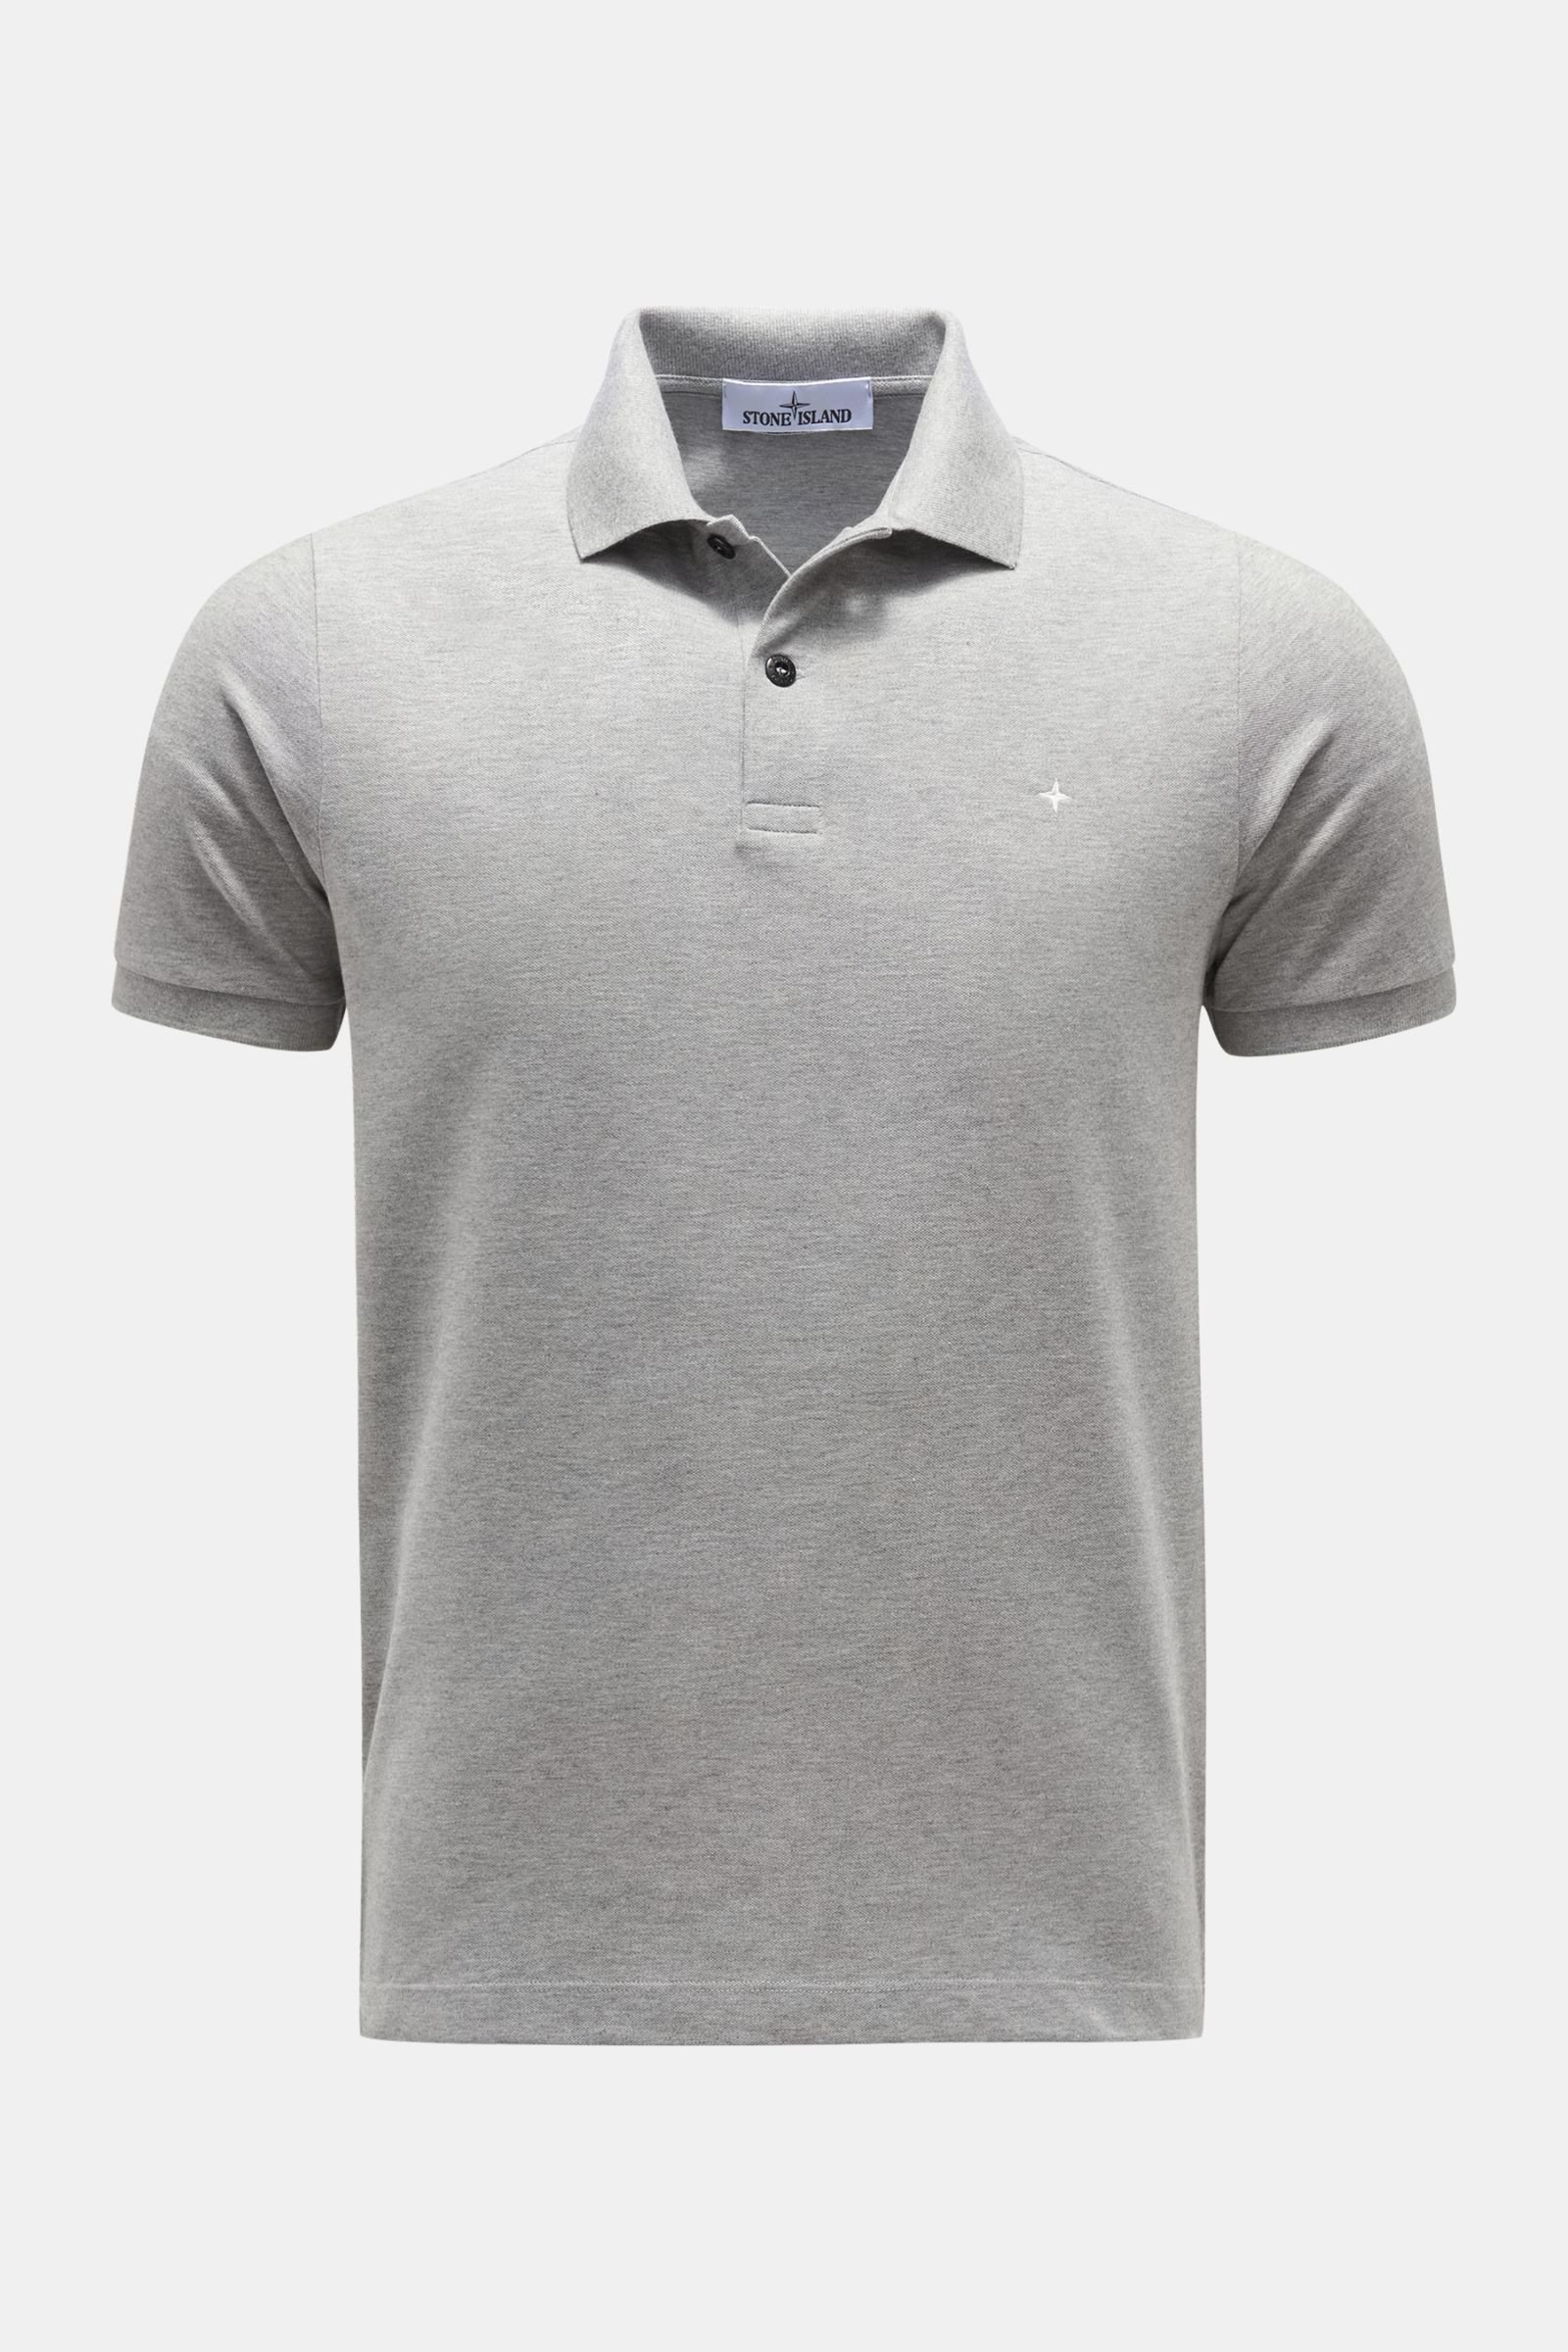 Polo shirt grey